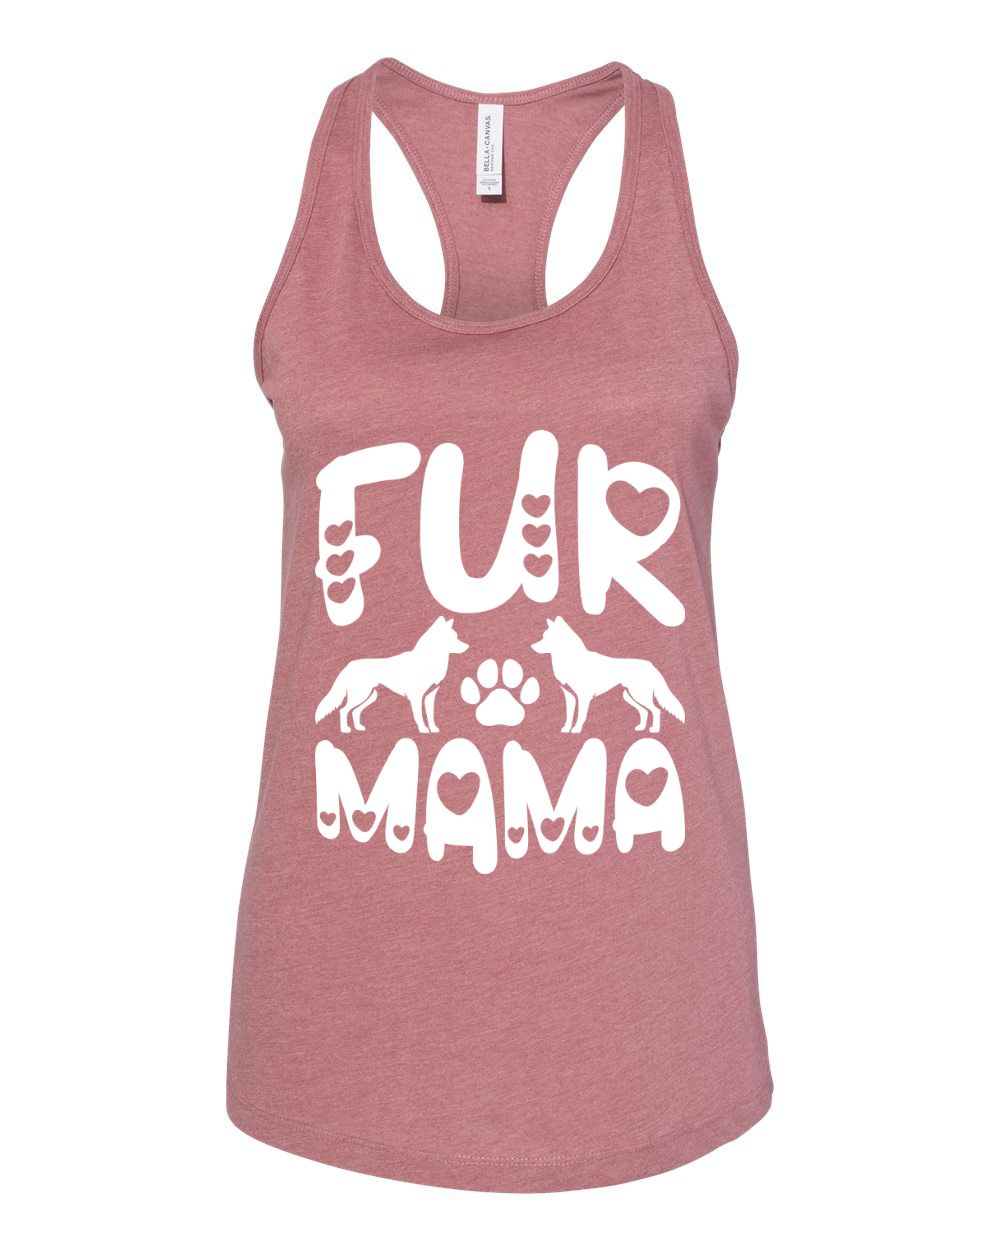 Fur Mama Siberian Husky Tank Top